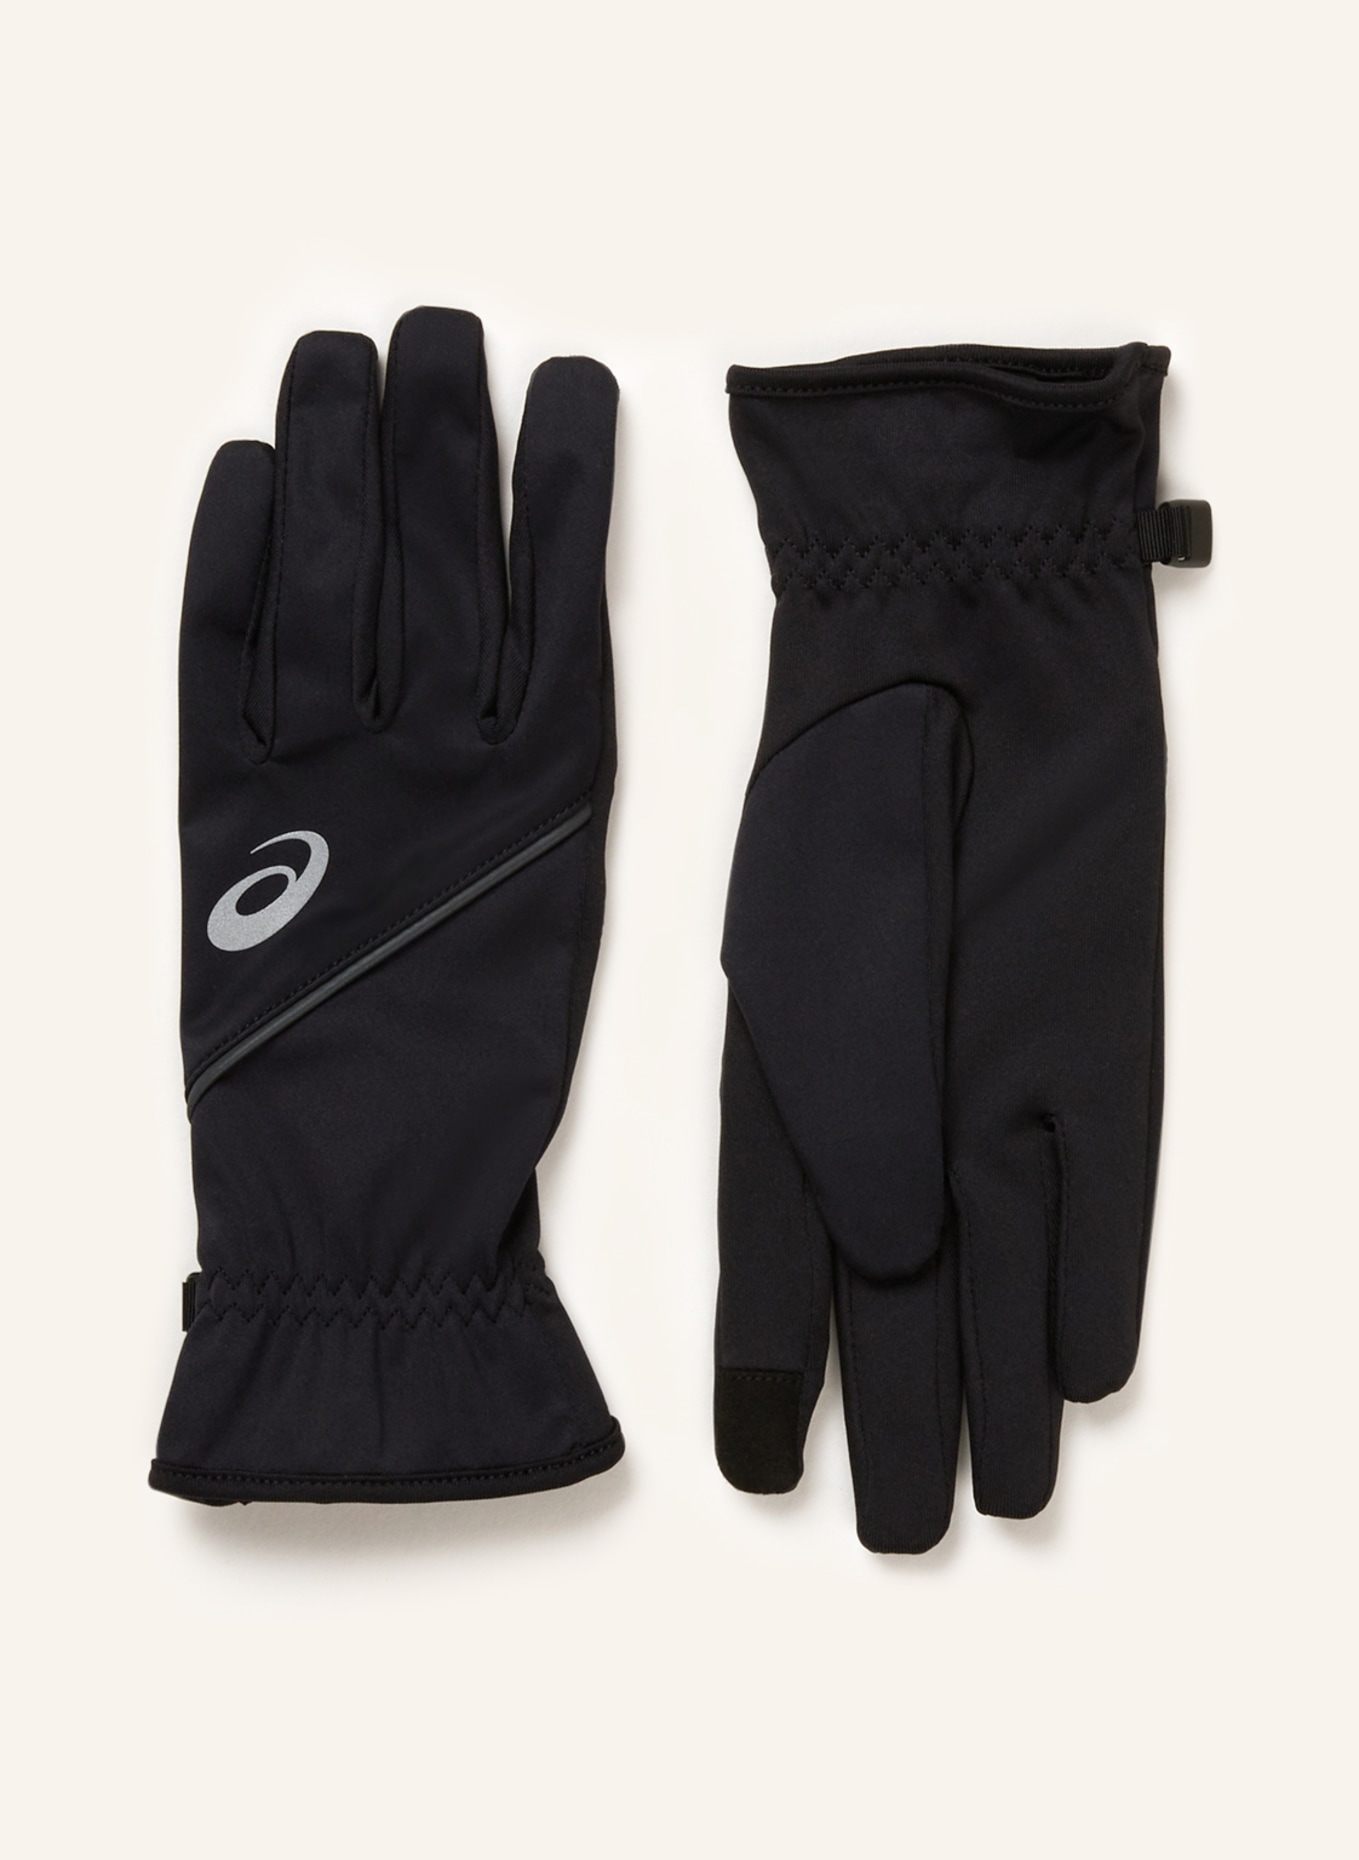 ASICS in THERMAL Touchscreen-Funktion mit schwarz GLOVES Multisport-Handschuhe